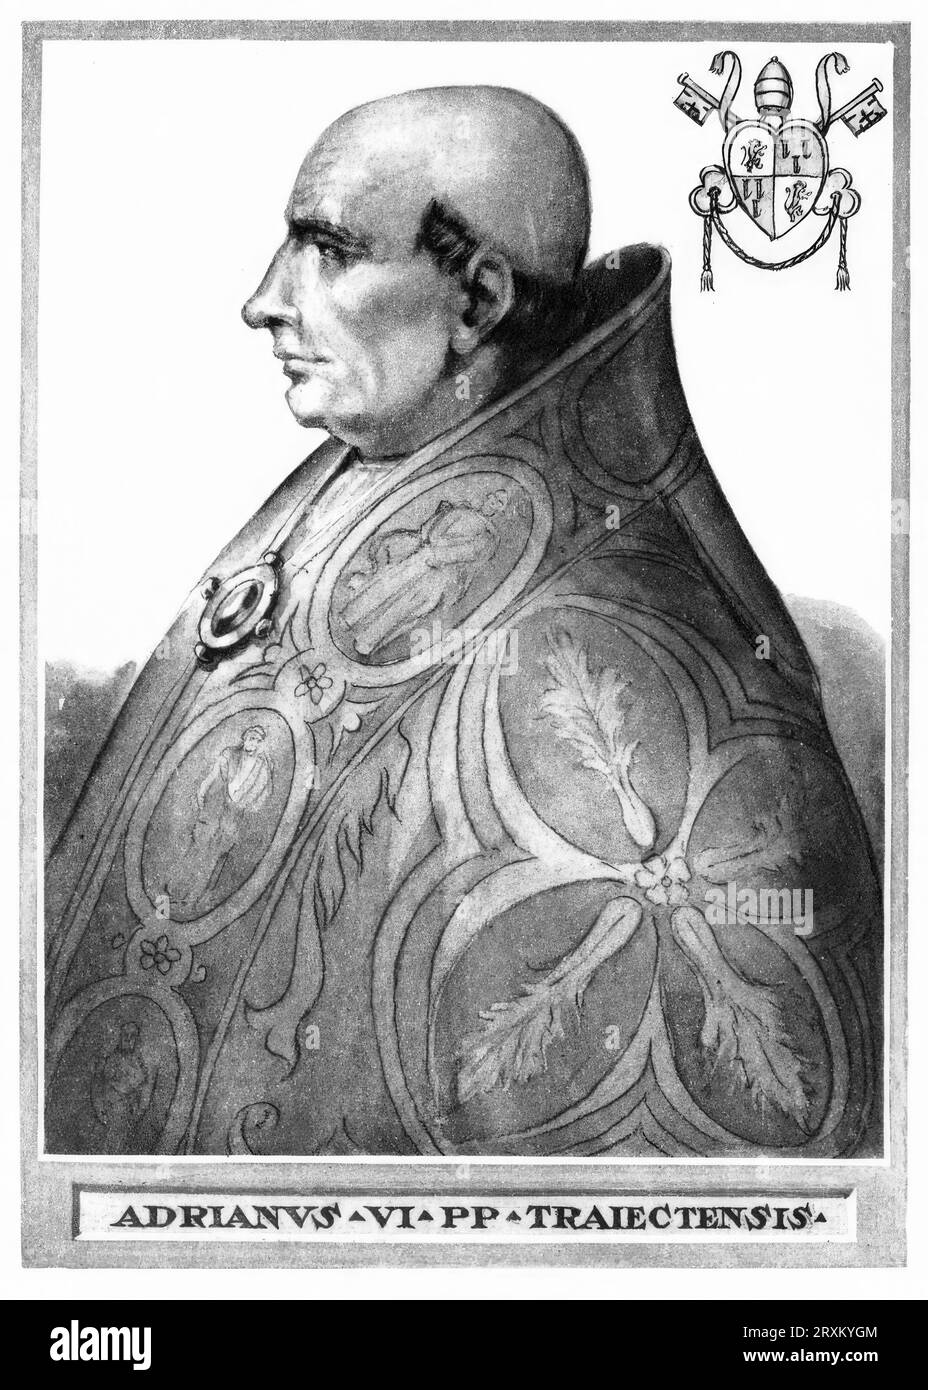 Hadrian VI., mit bürgerlichem Namen Adriaan Floriszoon (geboren Boeyens beziehungsweise Adriaan Florisz d’Edel, in damaliger Schreibweise Adriaen Floriszoon Boeiens, im Deutschen auch unter dem Namen Adrian von Utrecht bekannt (geboren 2. März 1459 in Utrecht, verstorben 14. September 1523 in Rom), war vom 9. Januar 1522 bis zu seinem Tode Papst, Historisch, digital restaurierte Reproduktion von einer Vorlage aus dem 19. Jahrhundert  /  Hadrian VI, with civil name Adriaan Floriszoon (born Boeyens respectively Adriaan Florisz d'Edel, in former spelling Adriaen Floriszoon Boeiens, in German also Stock Photo